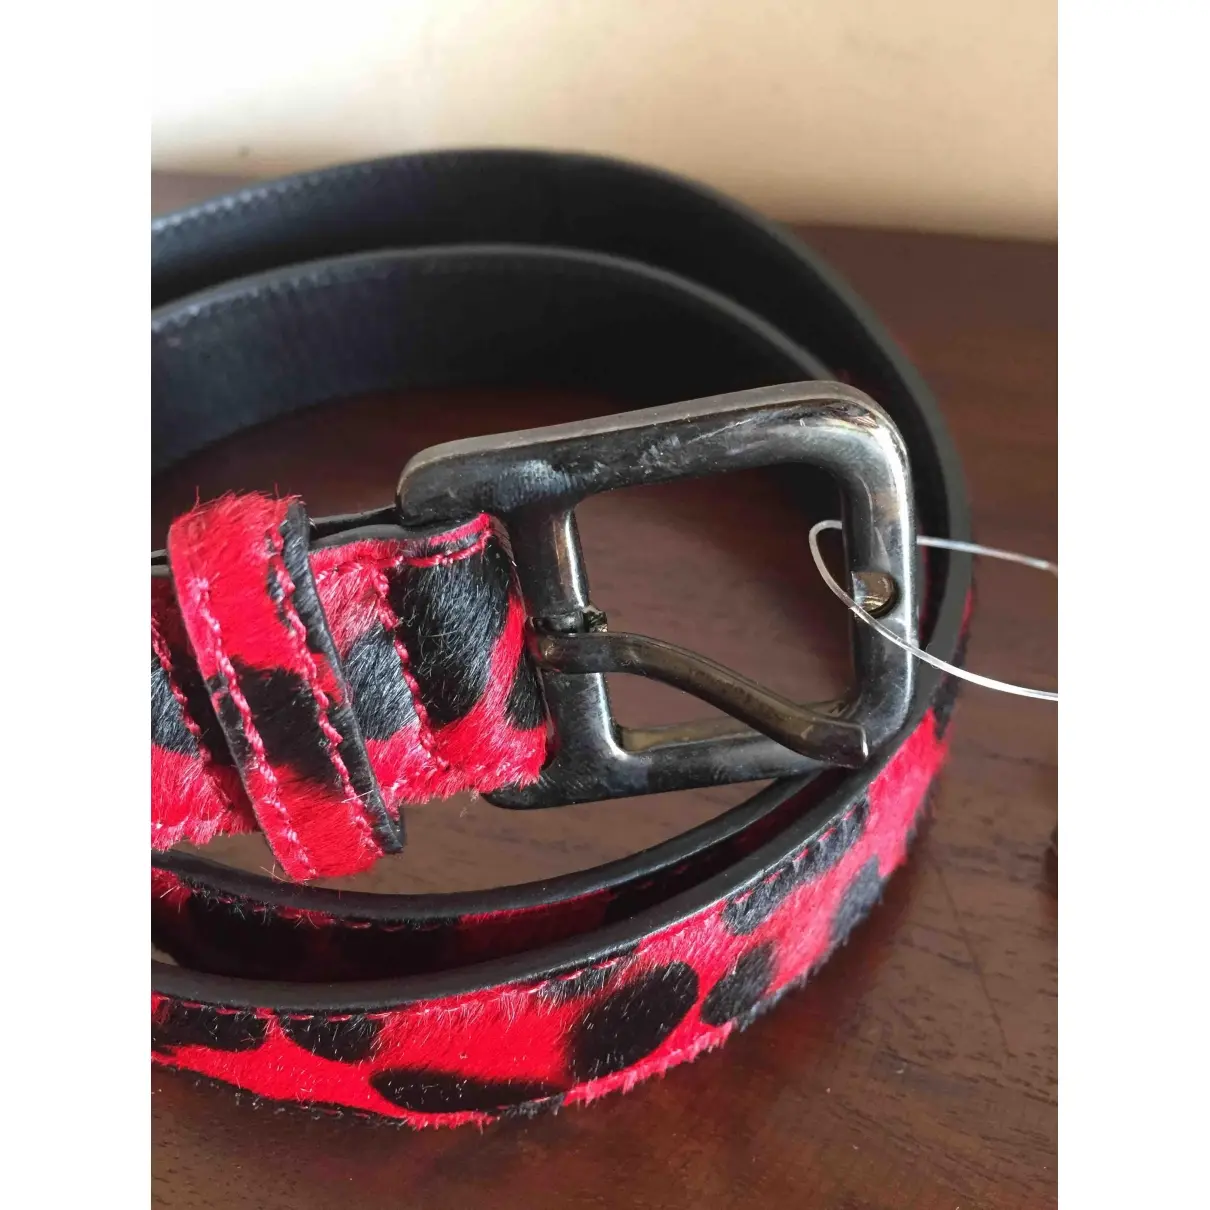 Buy Jaime Mascaro Leather belt online